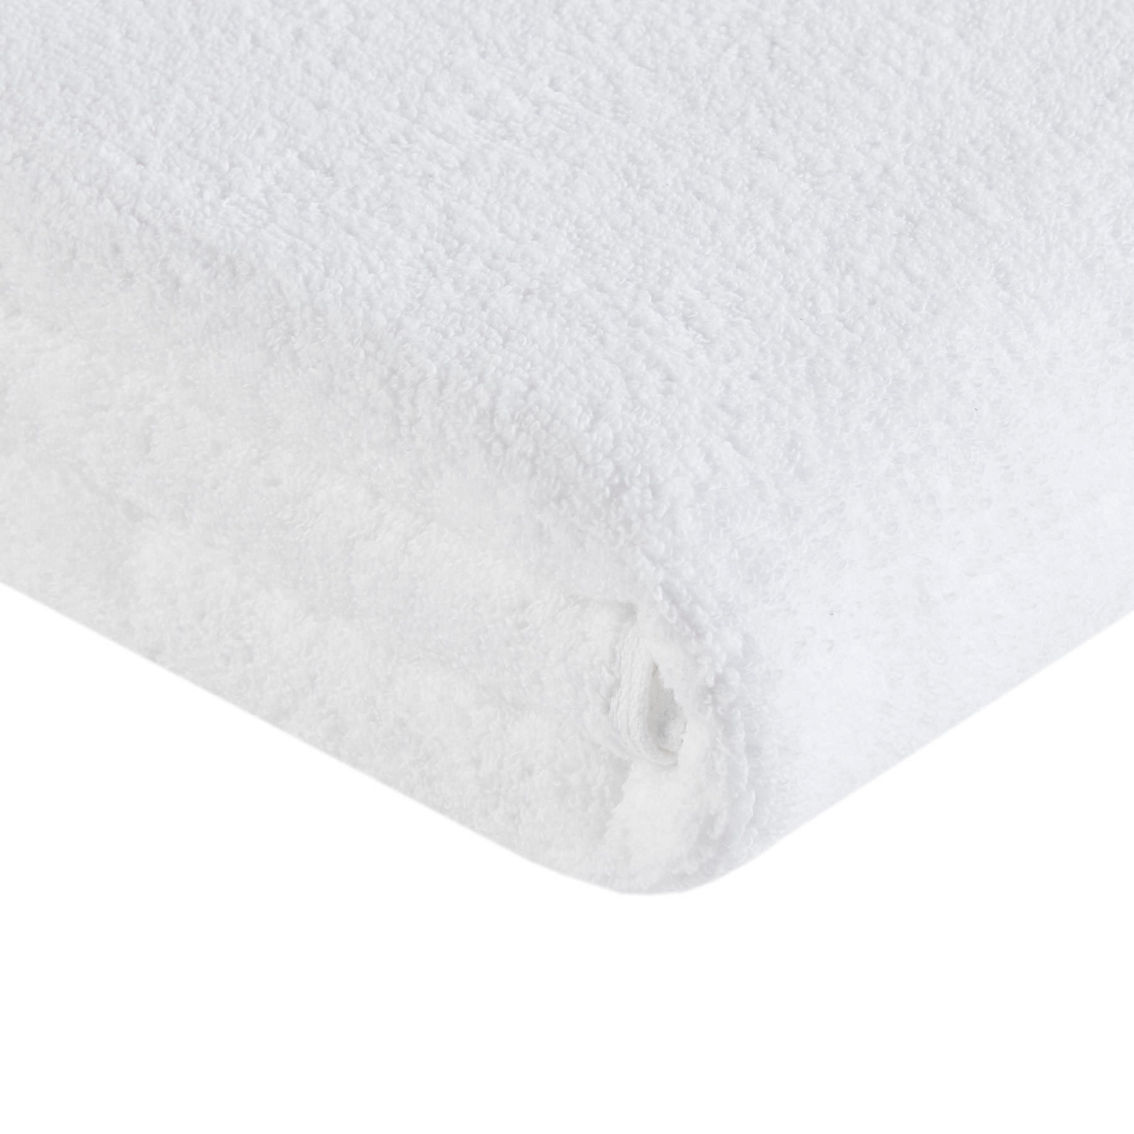 510 Design Big Bundle 100% Cotton Quick Dry 12 Piece Bath Towel Set - Image 3 of 5